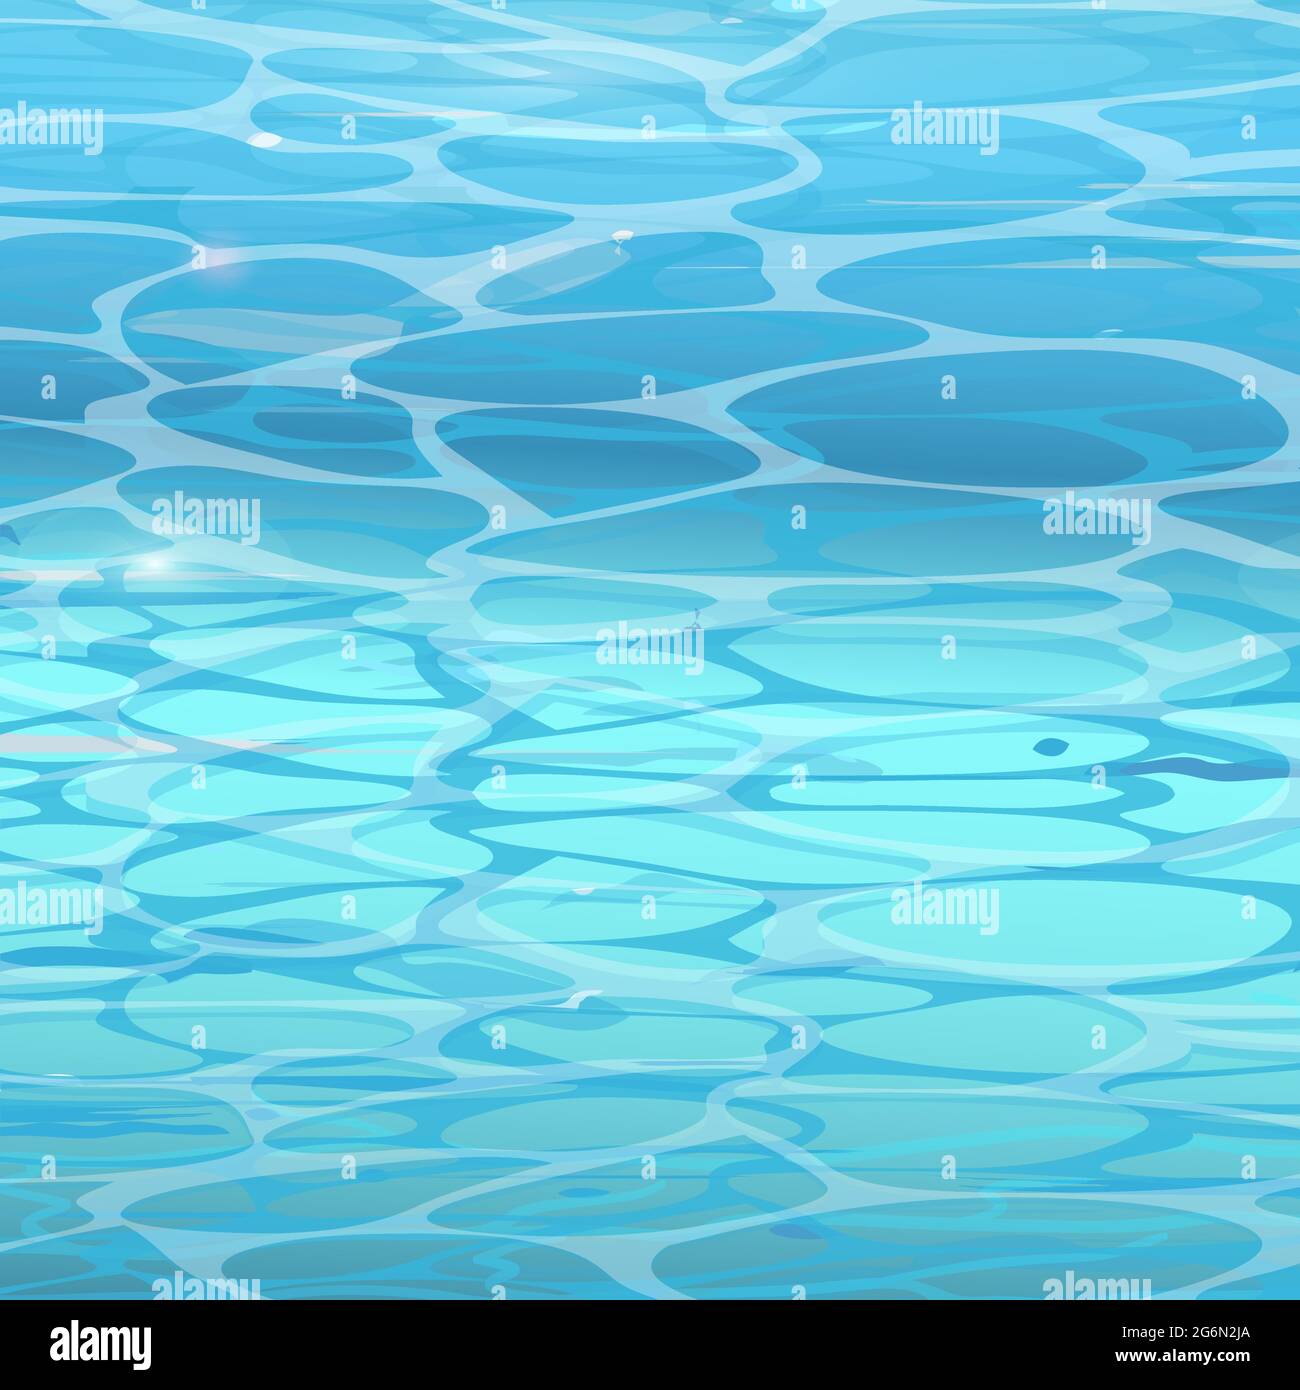 Acqua superficie di fondo in piscina. Immagine vettoriale dell'acqua pulita blu in stile piatto. Illustrazione Vettoriale